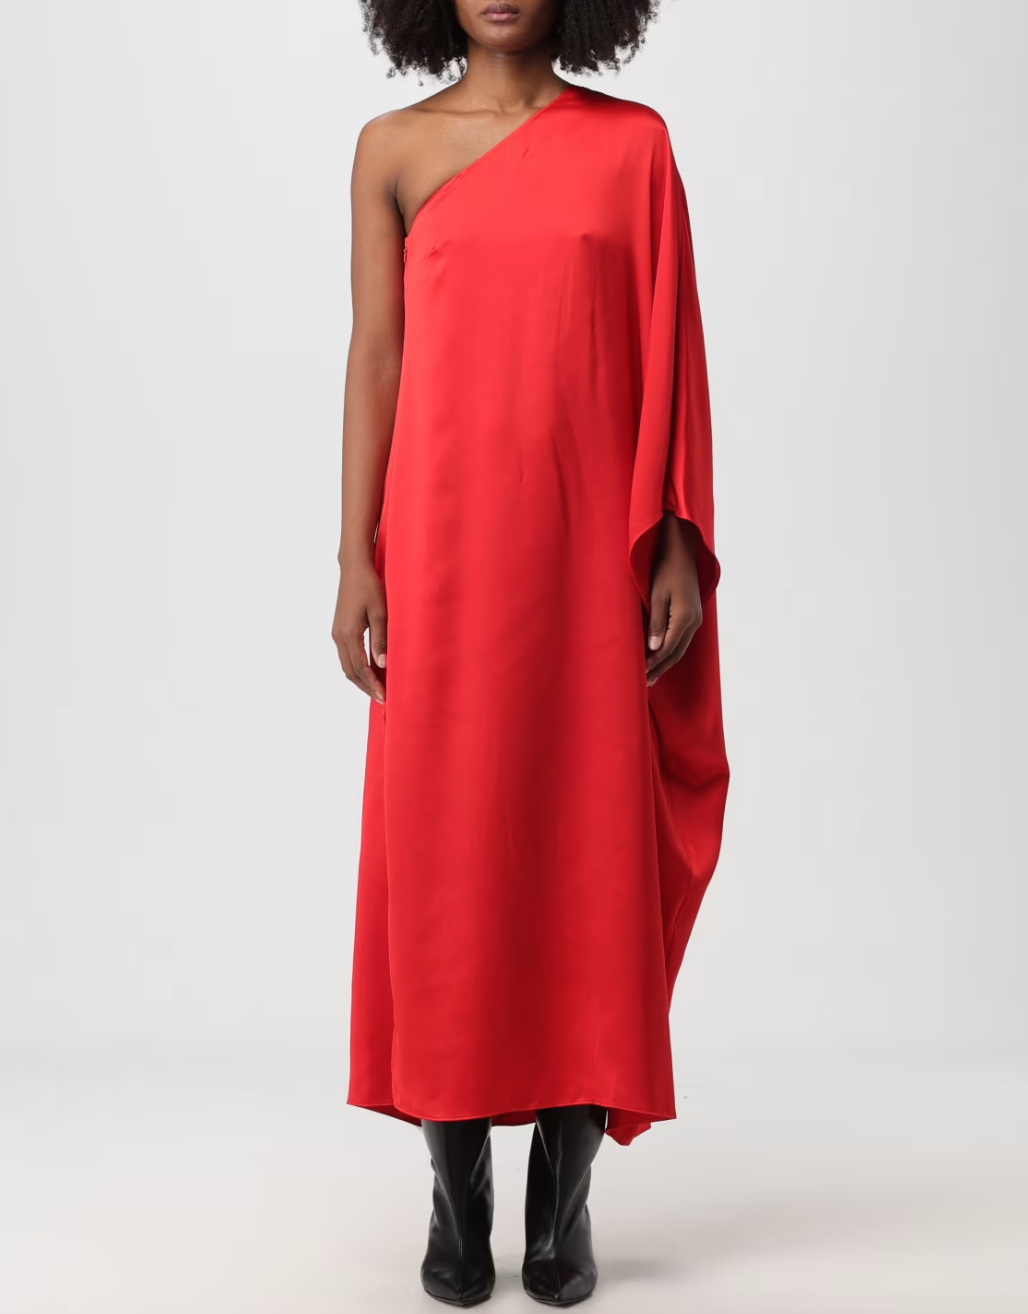 Dorit Kemsley's Red One Shoulder Dress